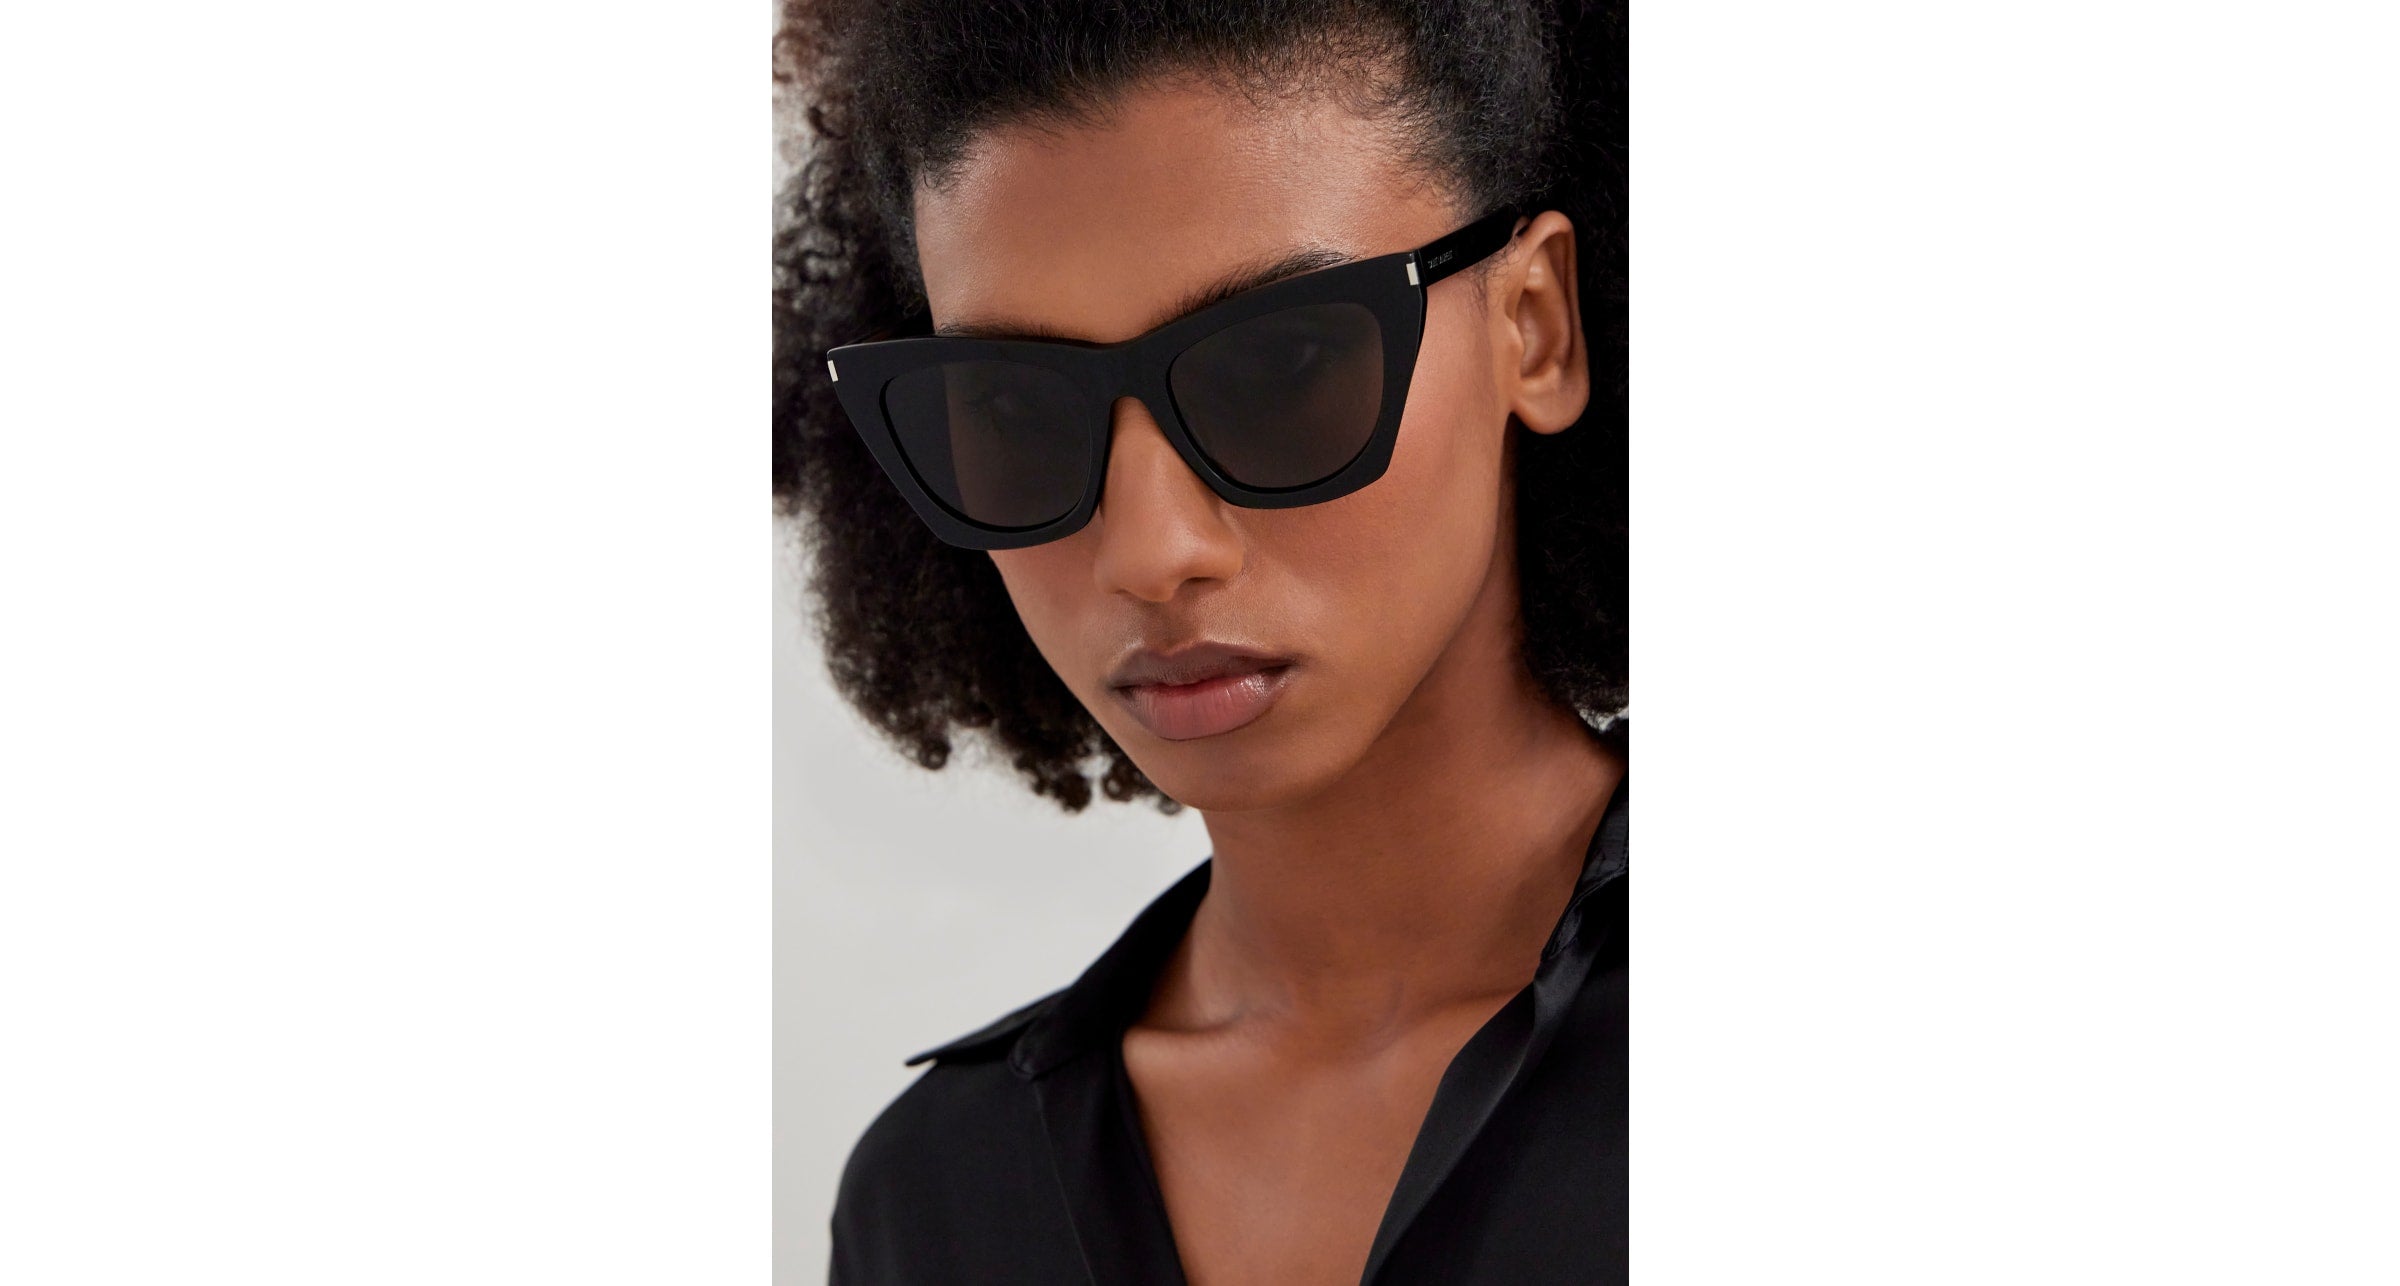 Kate Cat Eye Sunglasses in Grey - Saint Laurent